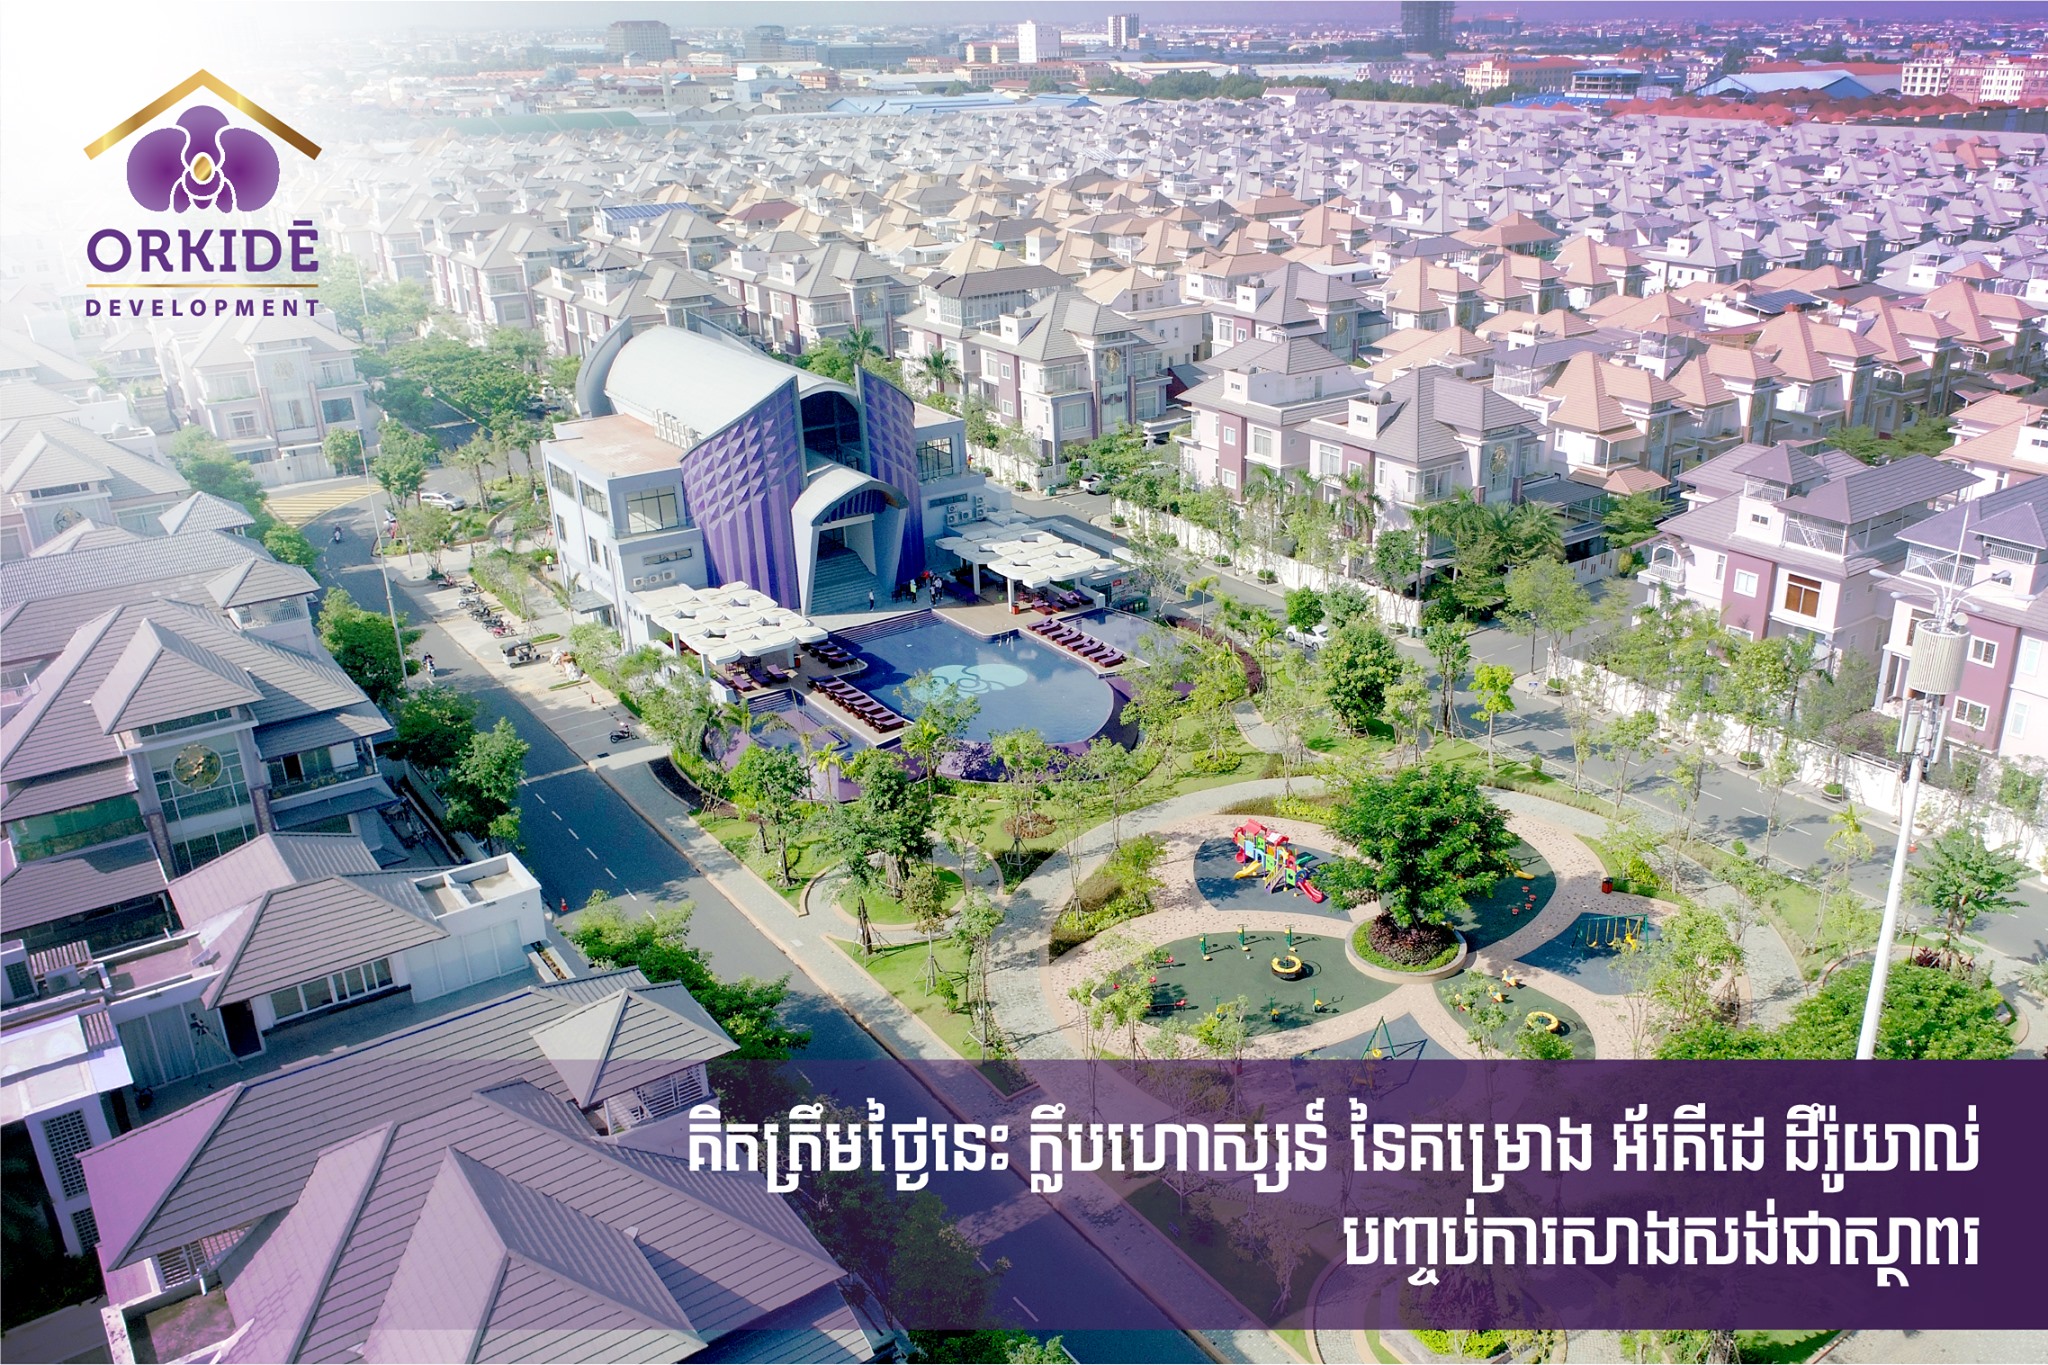 深受本地富豪、明星喜欢，Orkidē Development致力打造柬埔寨豪华住宅项目！